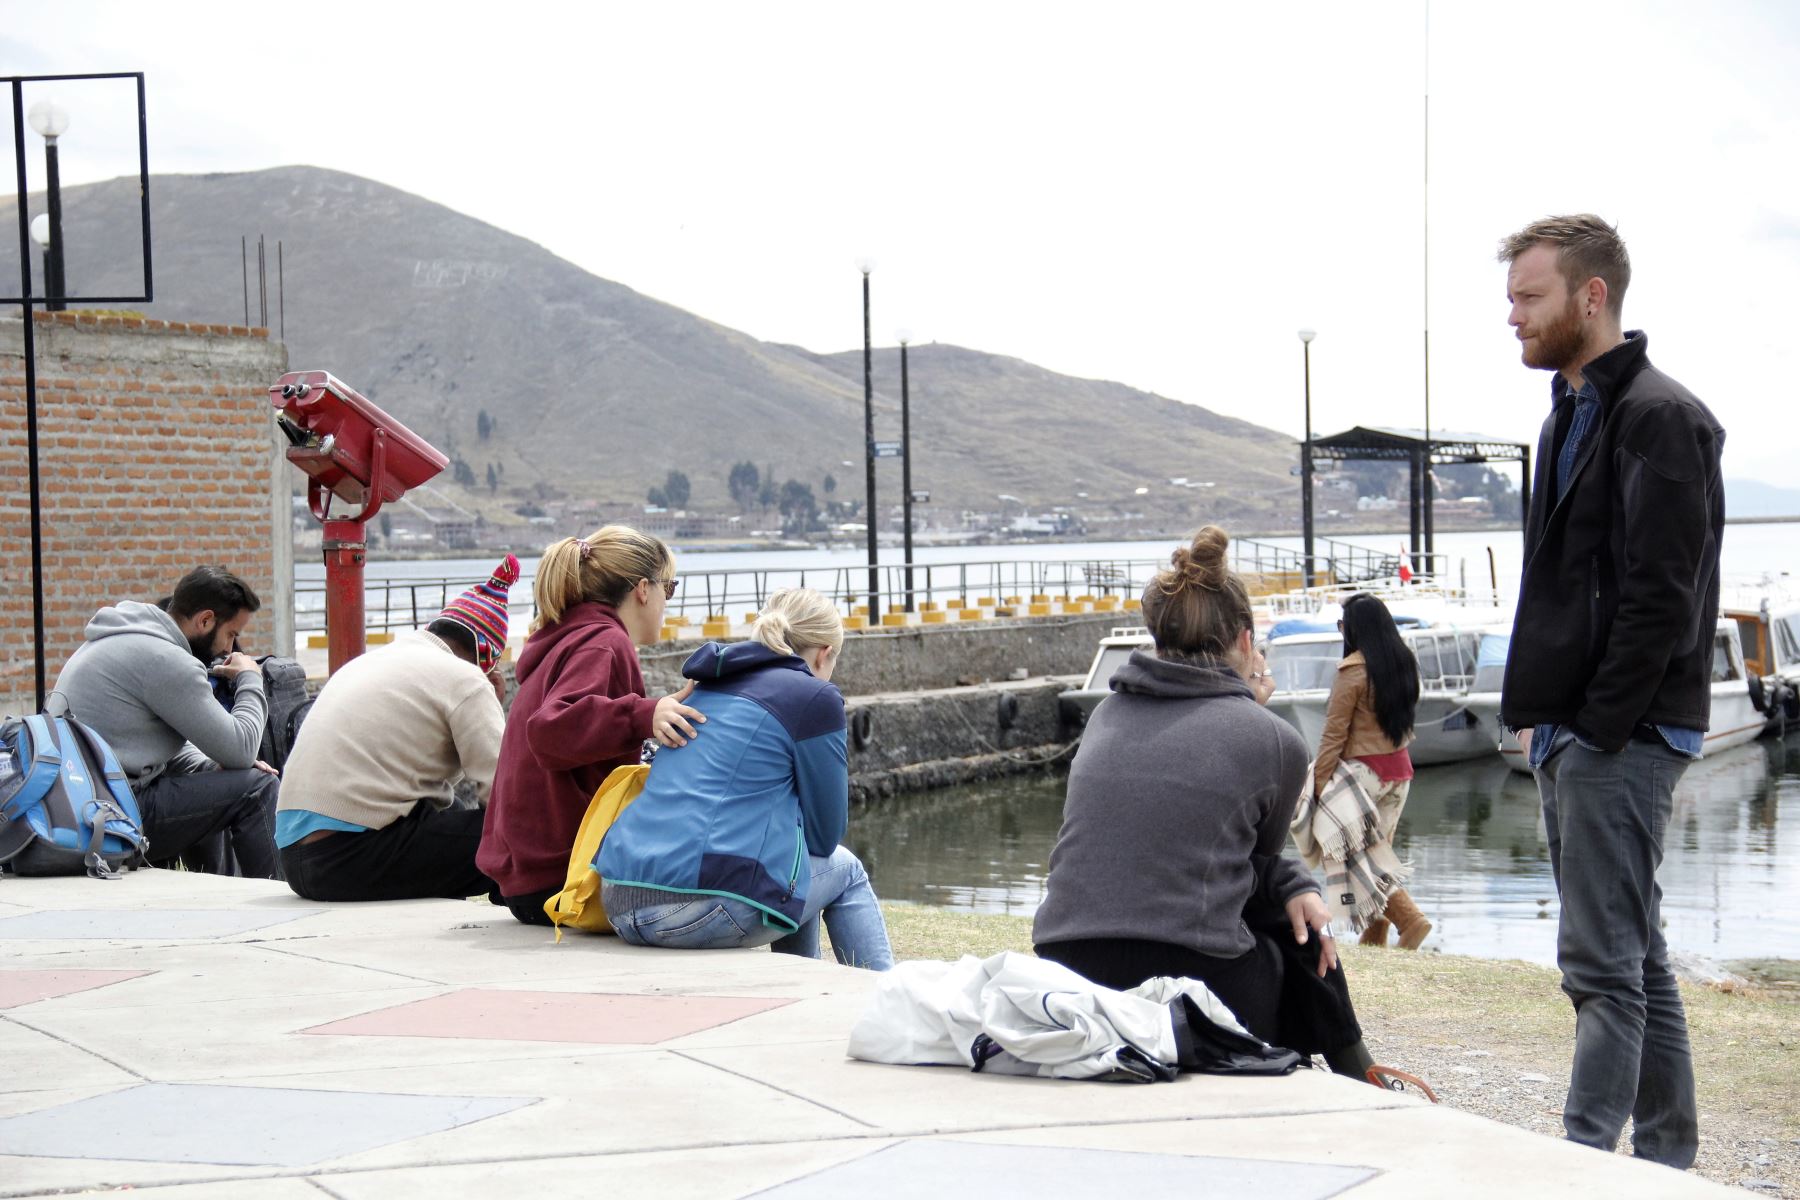 El turismo es el sector más afectado por las protestas y bloqueo de vías que se registran en Puno. Foto: ANDINA/Archivo